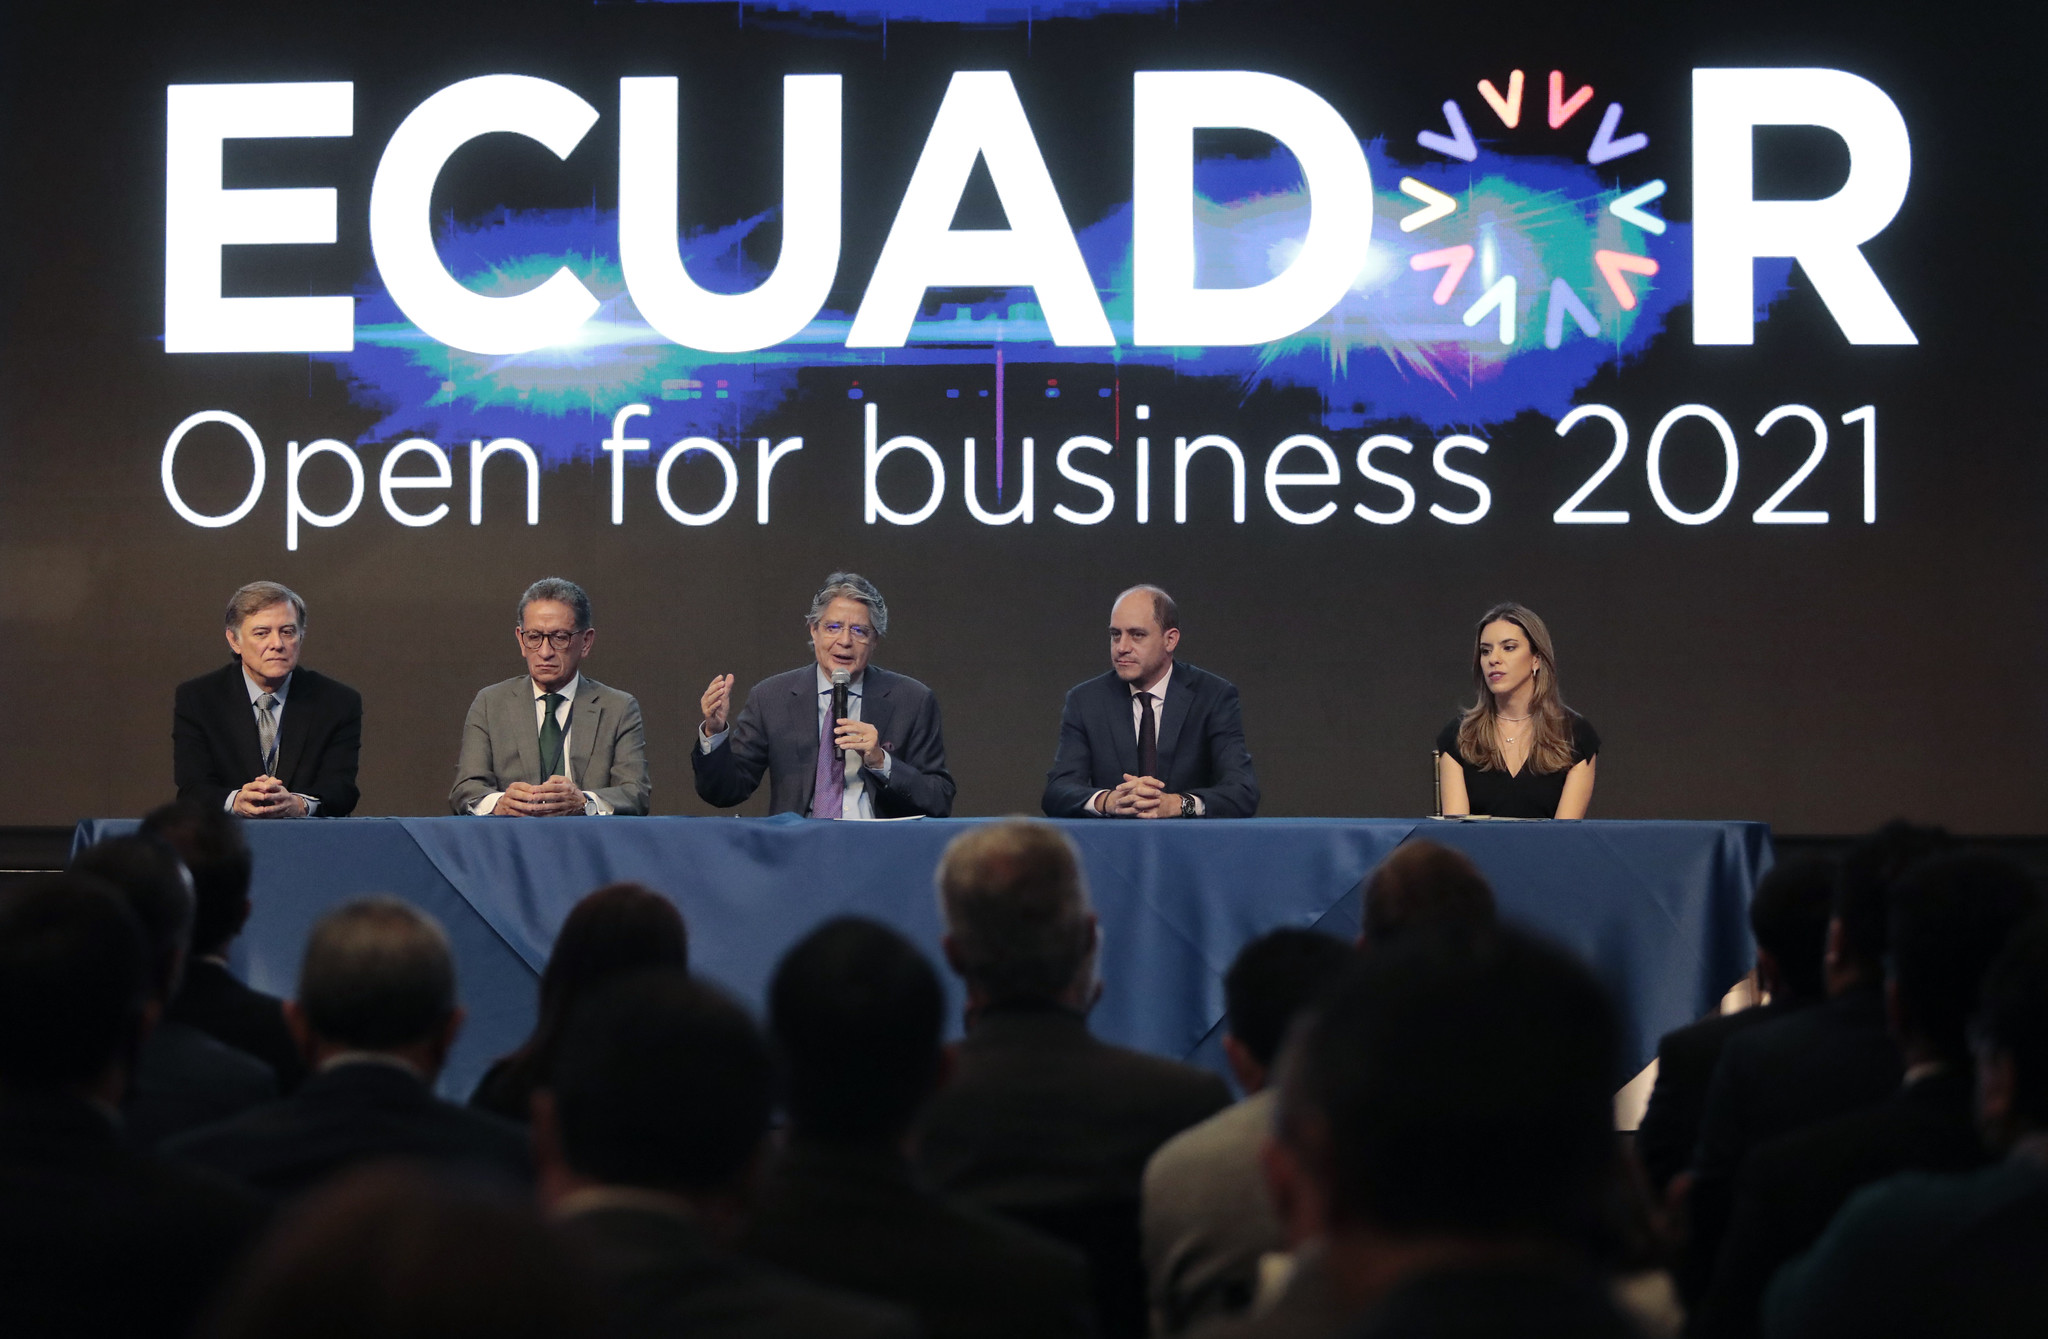 NEGOCIOS. Las expectativas generadas por el Ecuador Open for Business no se han concretado.